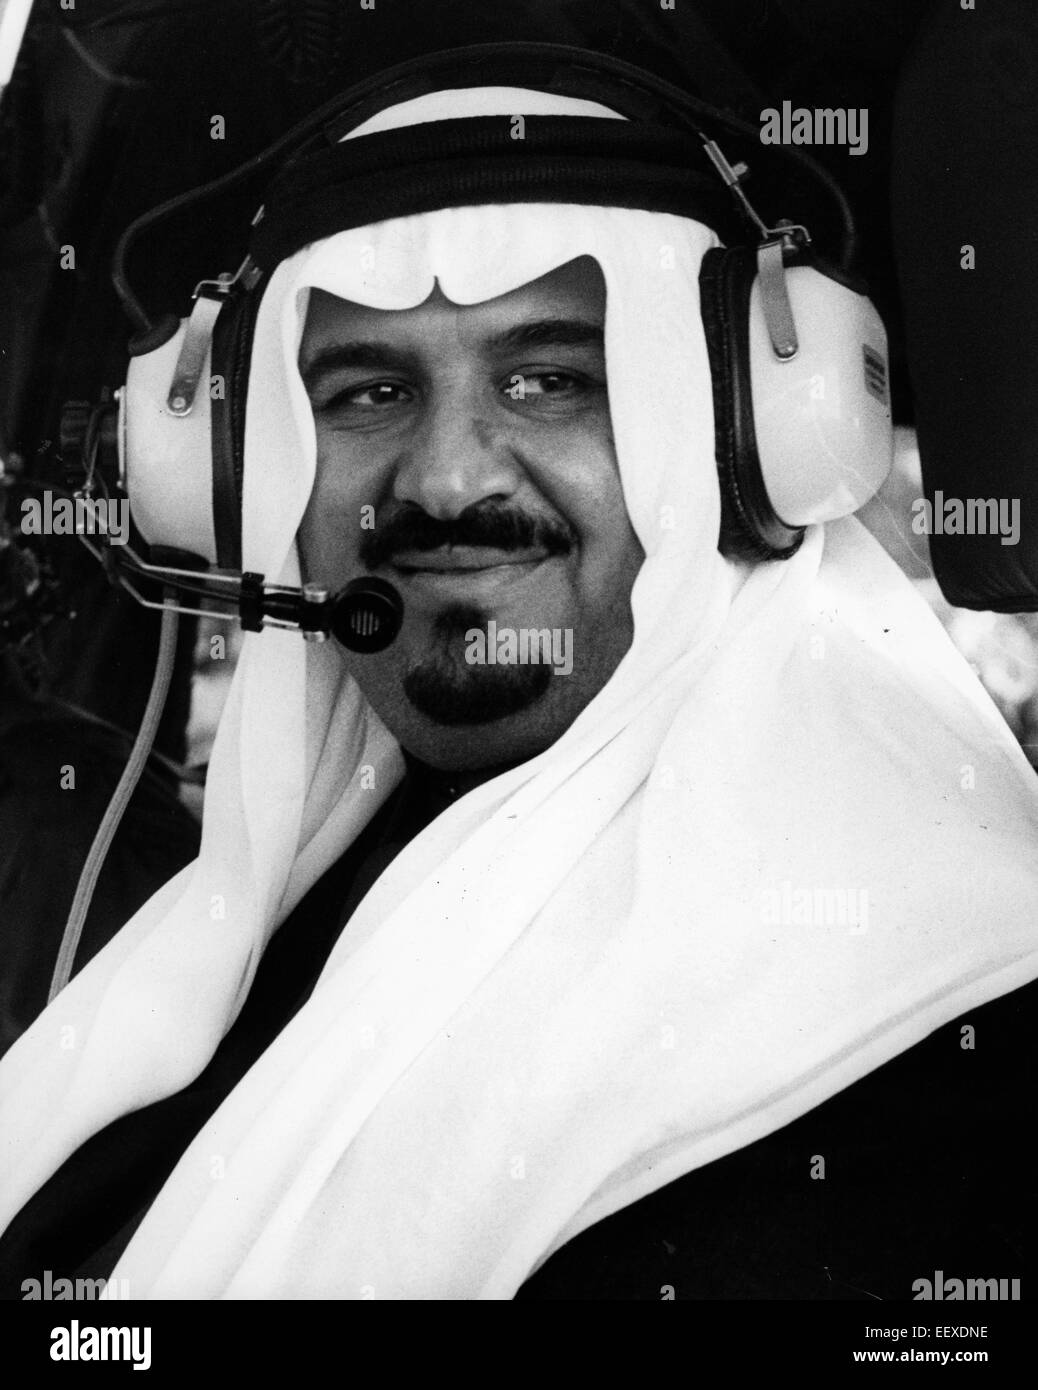 22 janvier 2015 - L'Arabie saoudite, le Roi Abdallah est mort, a annoncé la télévision d'Etat. Il était de 90. Abdallah, avait été à l'hôpital pendant plusieurs semaines souffrant d'une infection pulmonaire. Abdullah, un allié des États-Unis dans la lutte contre al-Qaïda, est arrivé au pouvoir en 2005 après son demi-frère est décédé. Sur la photo : Apr 16, 2009 - La ville de Koweït, Koweït - Le Roi Abdullah bin Abdul Aziz Al Saud en hélicoptère. Maison des Saoud est la famille royale du Royaume d'Arabie Saoudite. La nation moderne d'Arabie saoudite a été créé en 1932, si les racines et l'influence pour la Maison des Saoud a été plantée dans la péninsule arabe s Banque D'Images